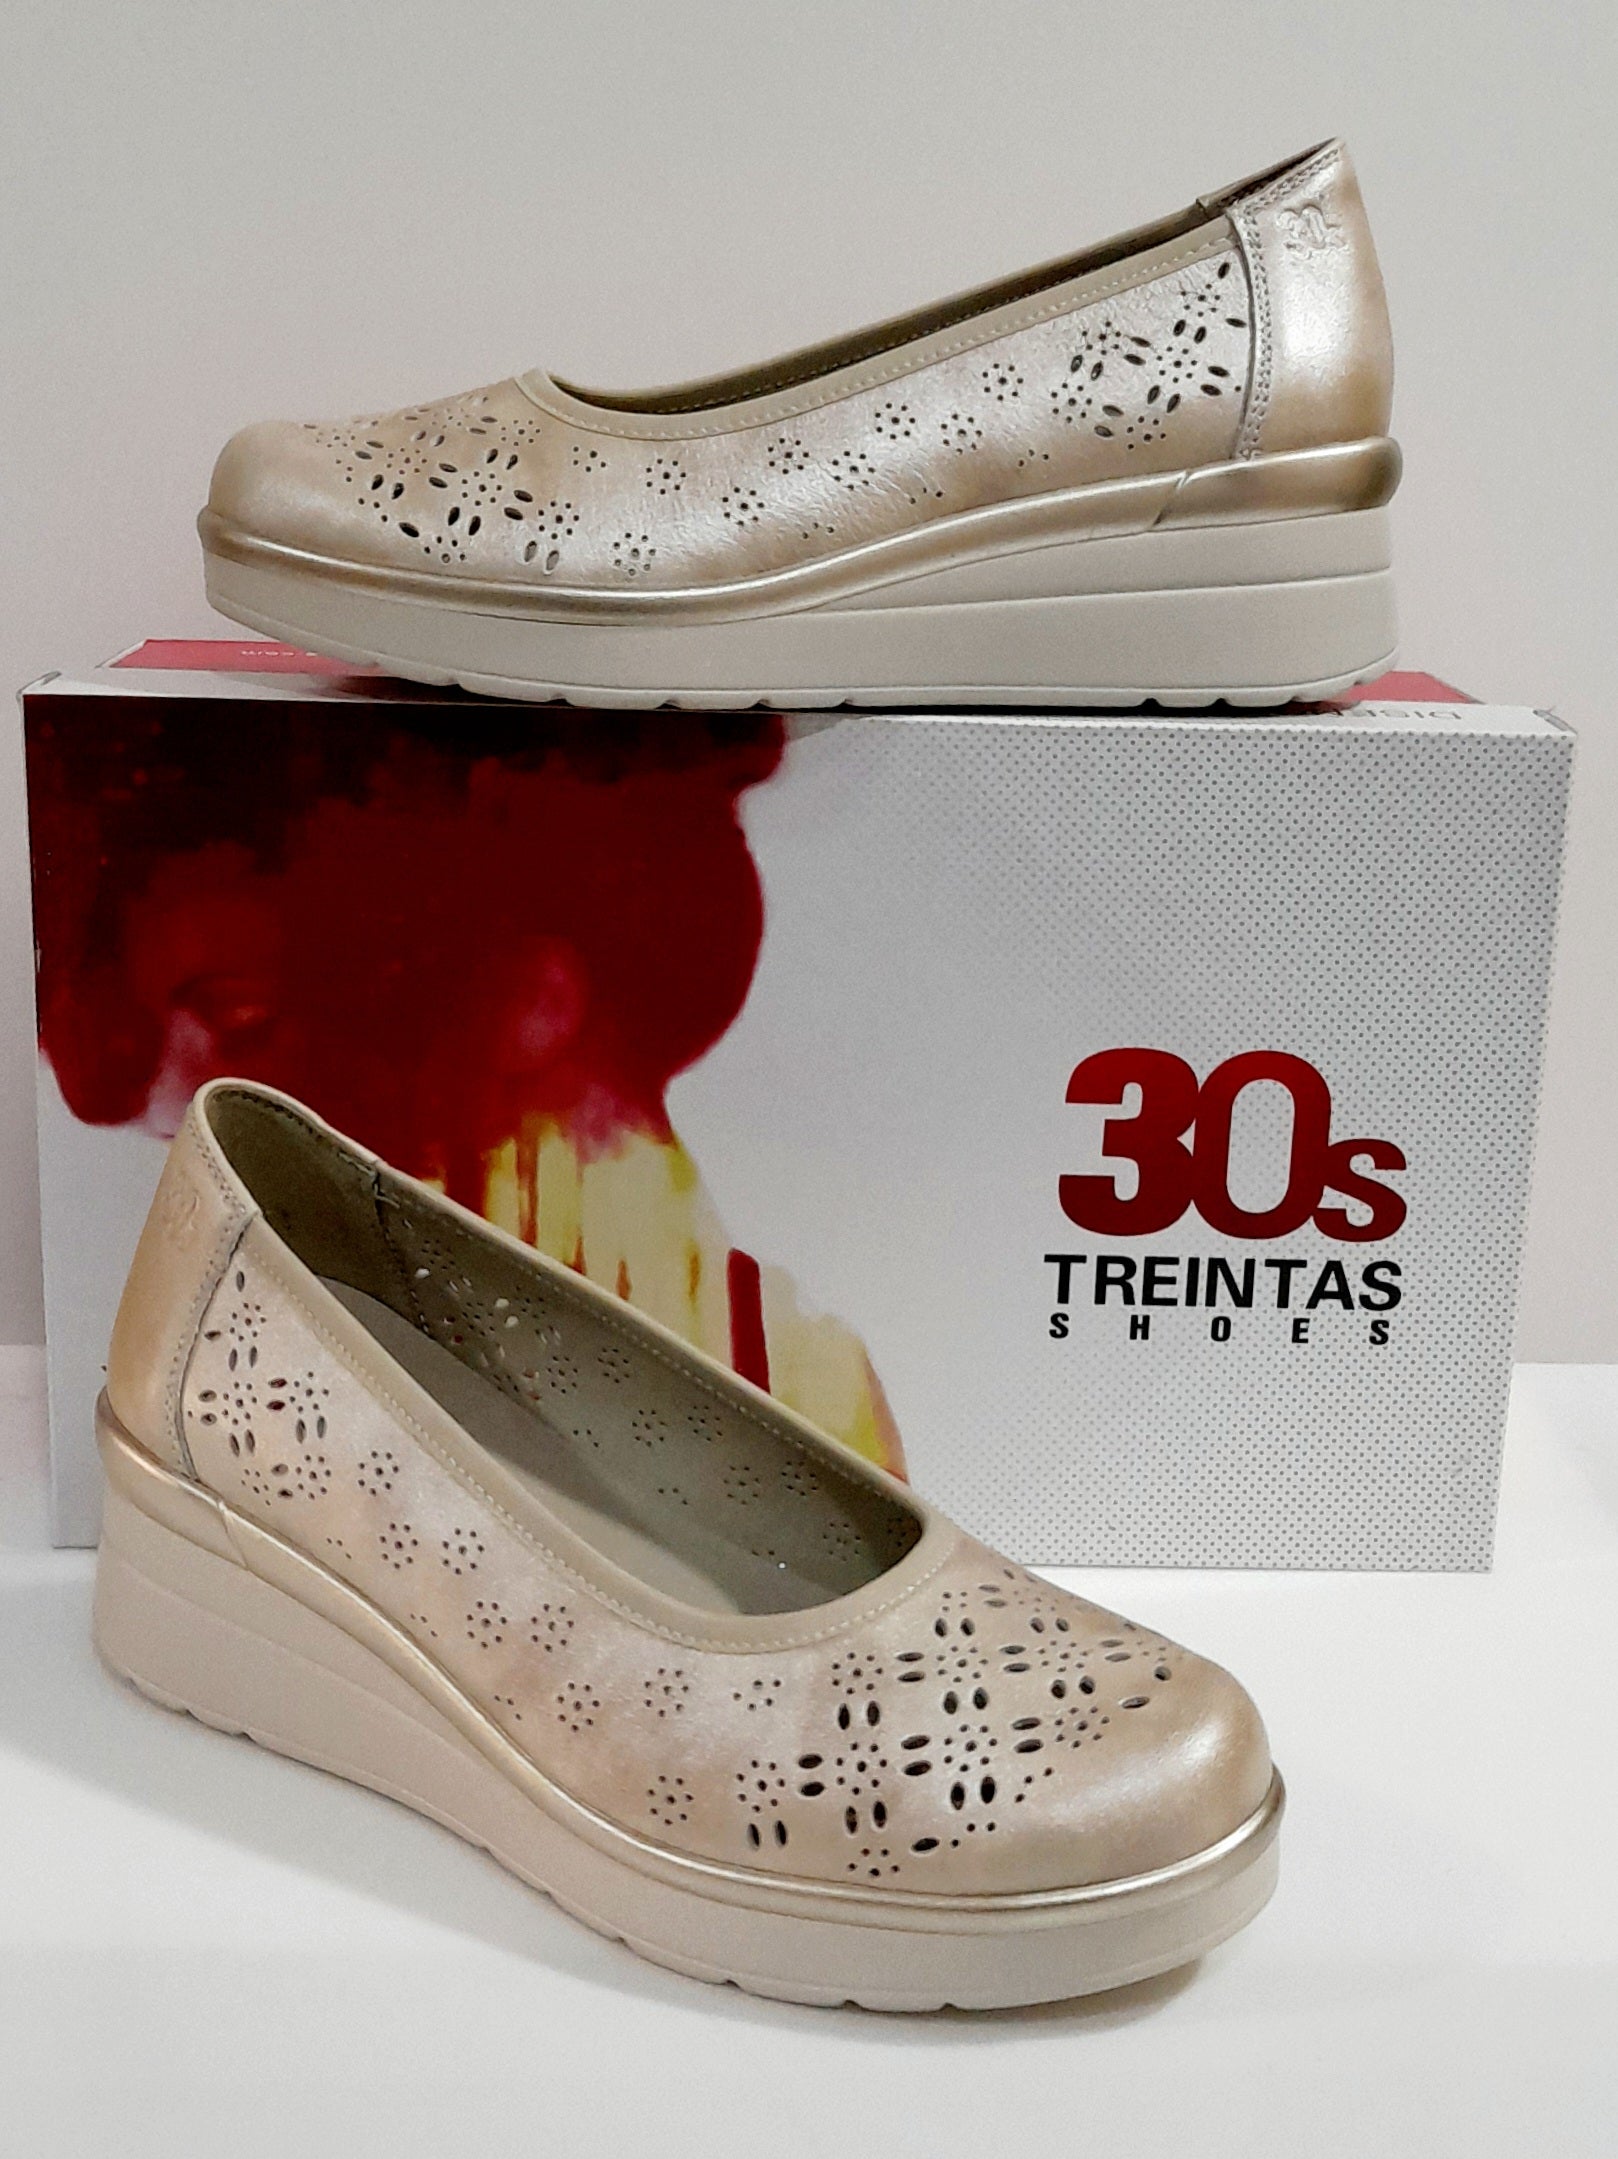 Escritor Credencial menú Zapatos TREINTAS 3908 – Calzados Vega